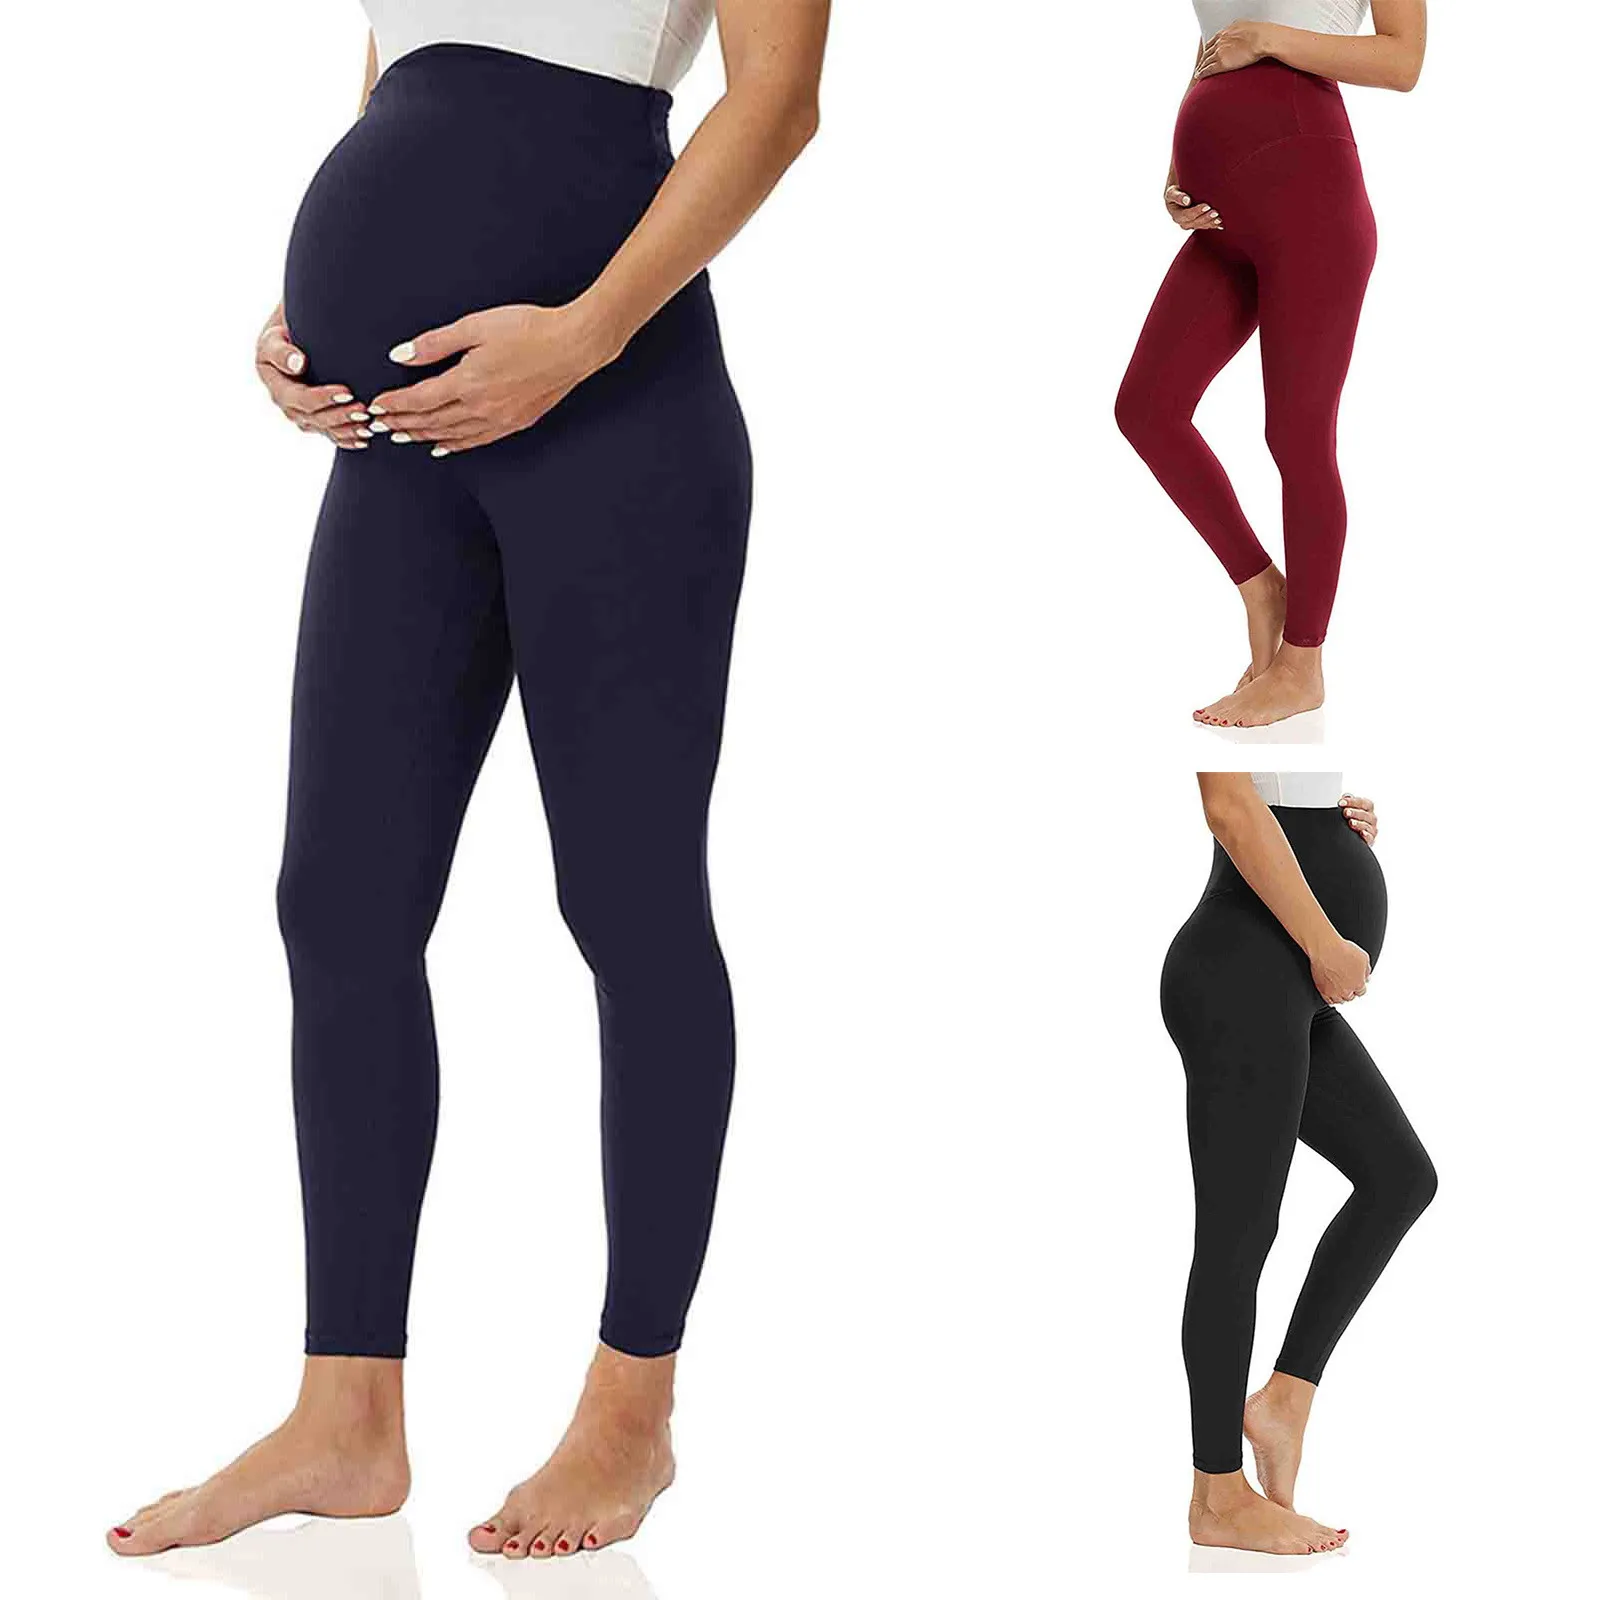 

Elastic High Waist Maternity Leggings Skinny For Pregnant Women Belly Support Postpartum Leggins Body Shaper Fitness Trousers